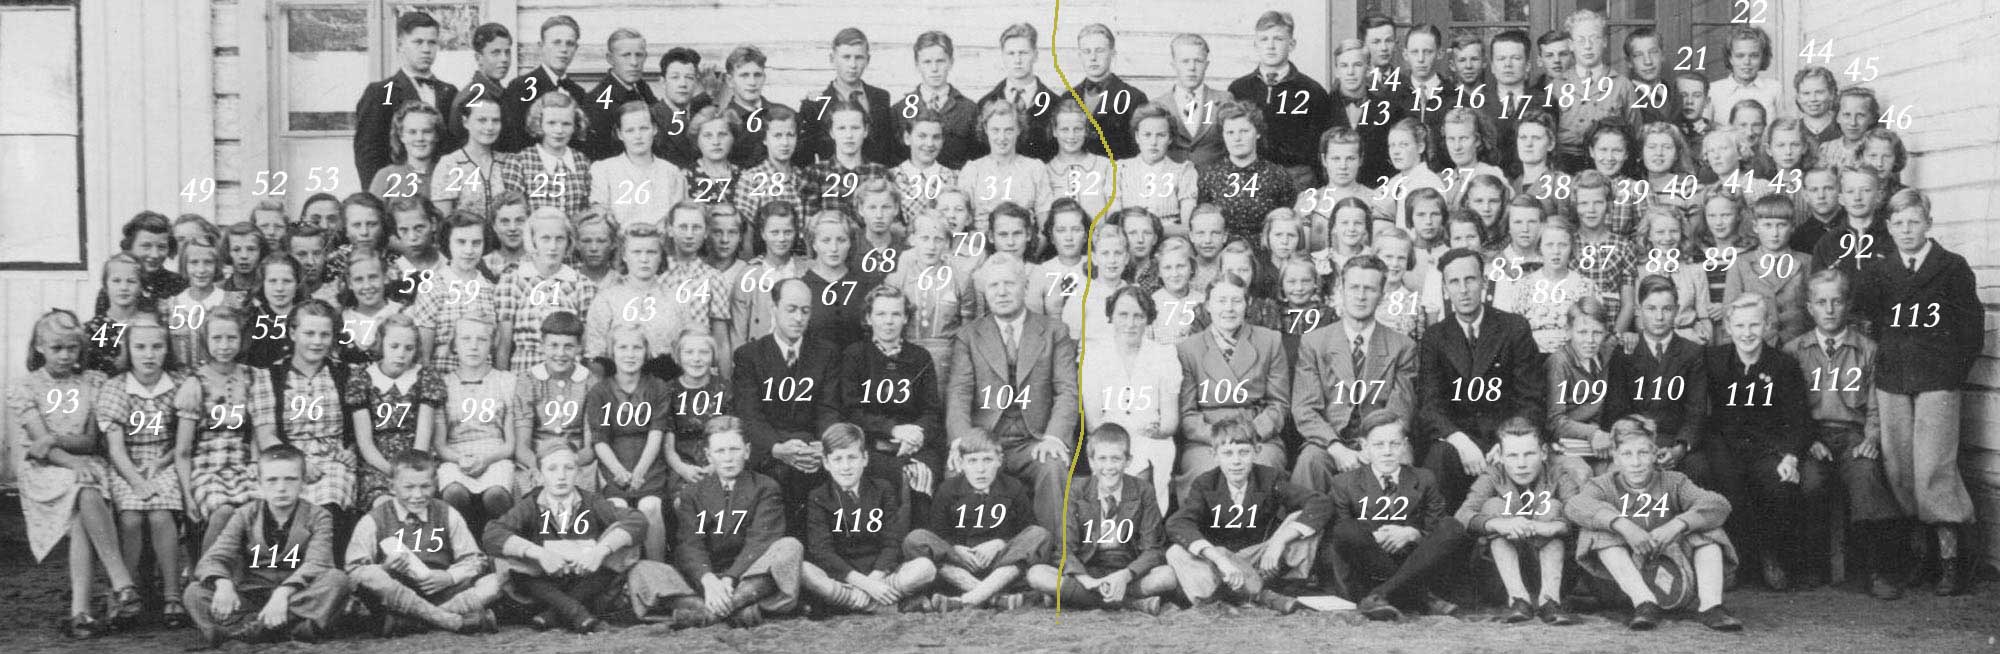 Nykarleby Samskola 1940—41